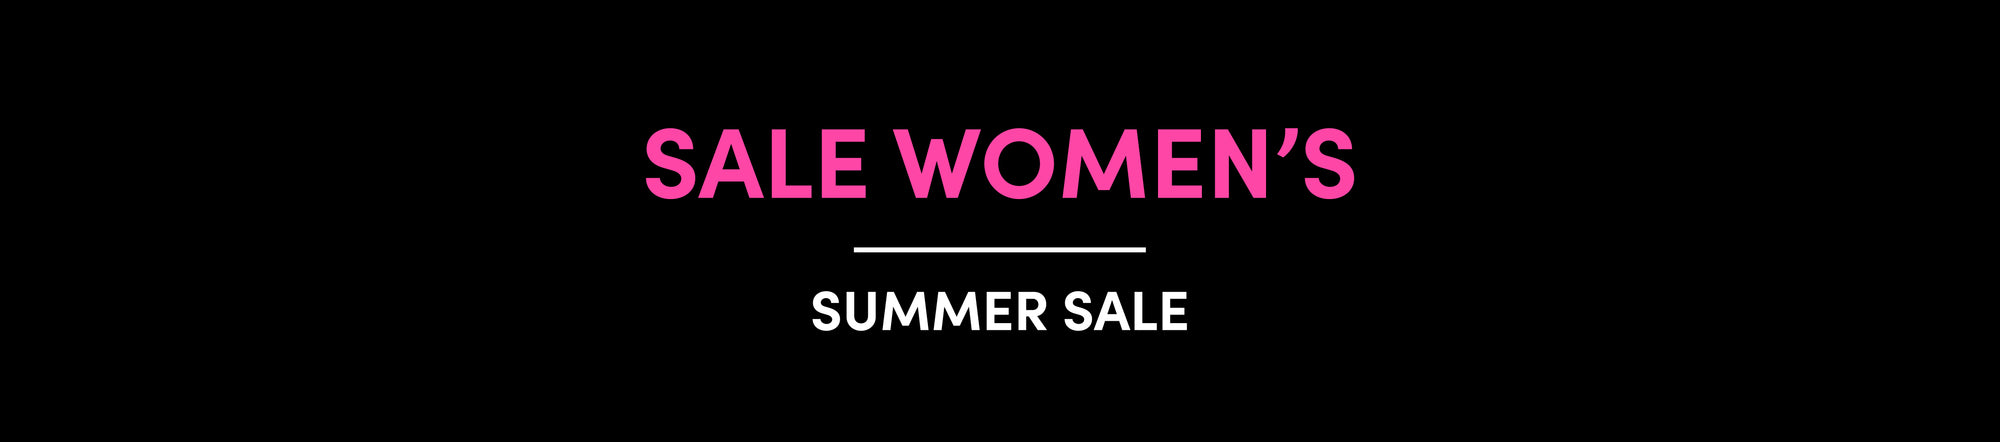 Sale Women's Summer Sale